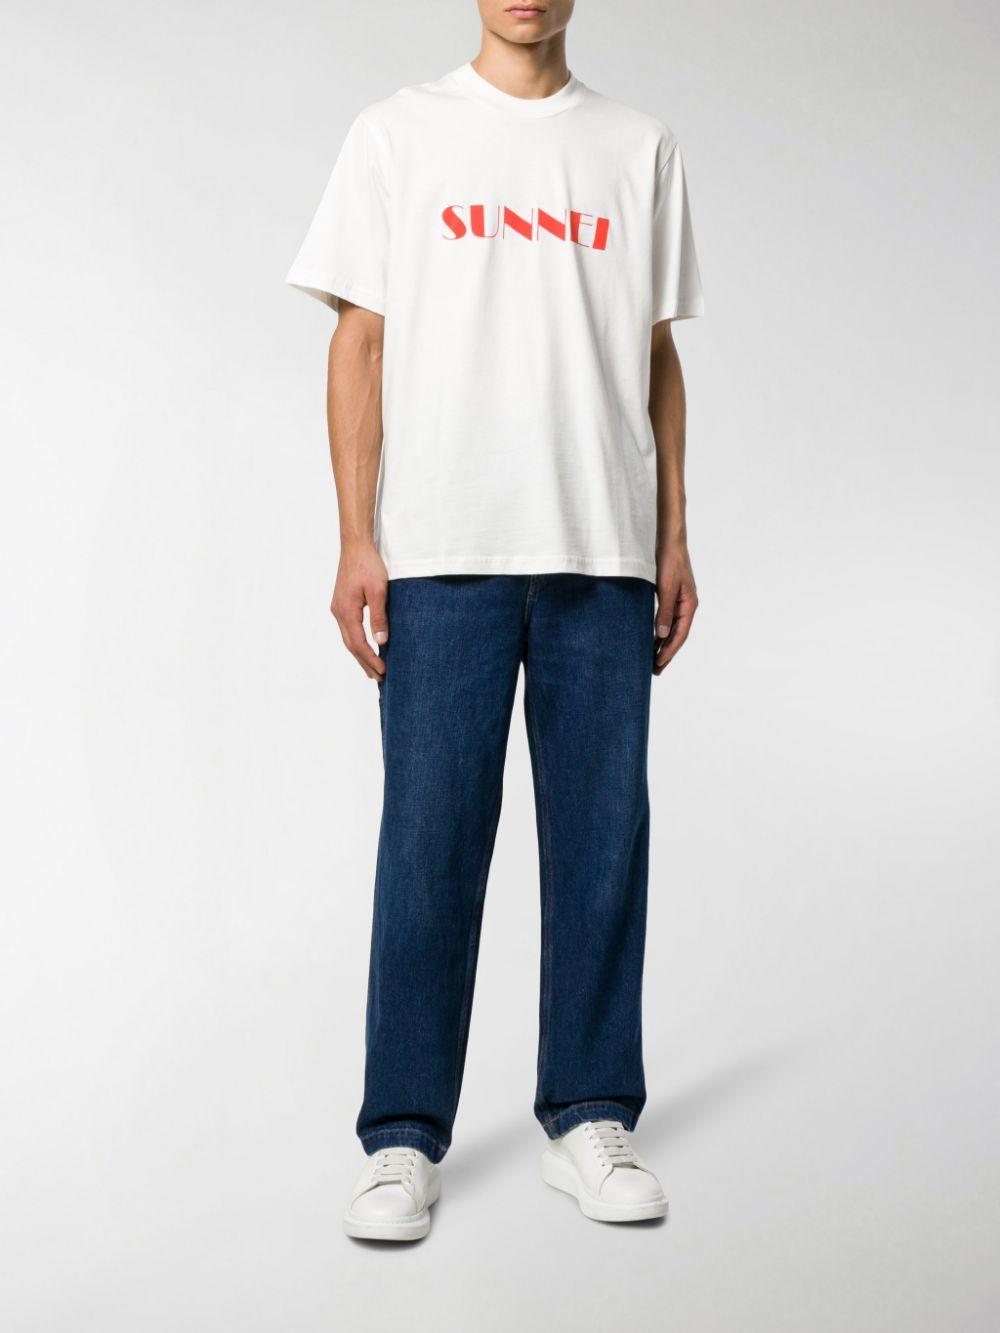 Sunnei Cotton Logo Print T-shirt in White for Men - Lyst